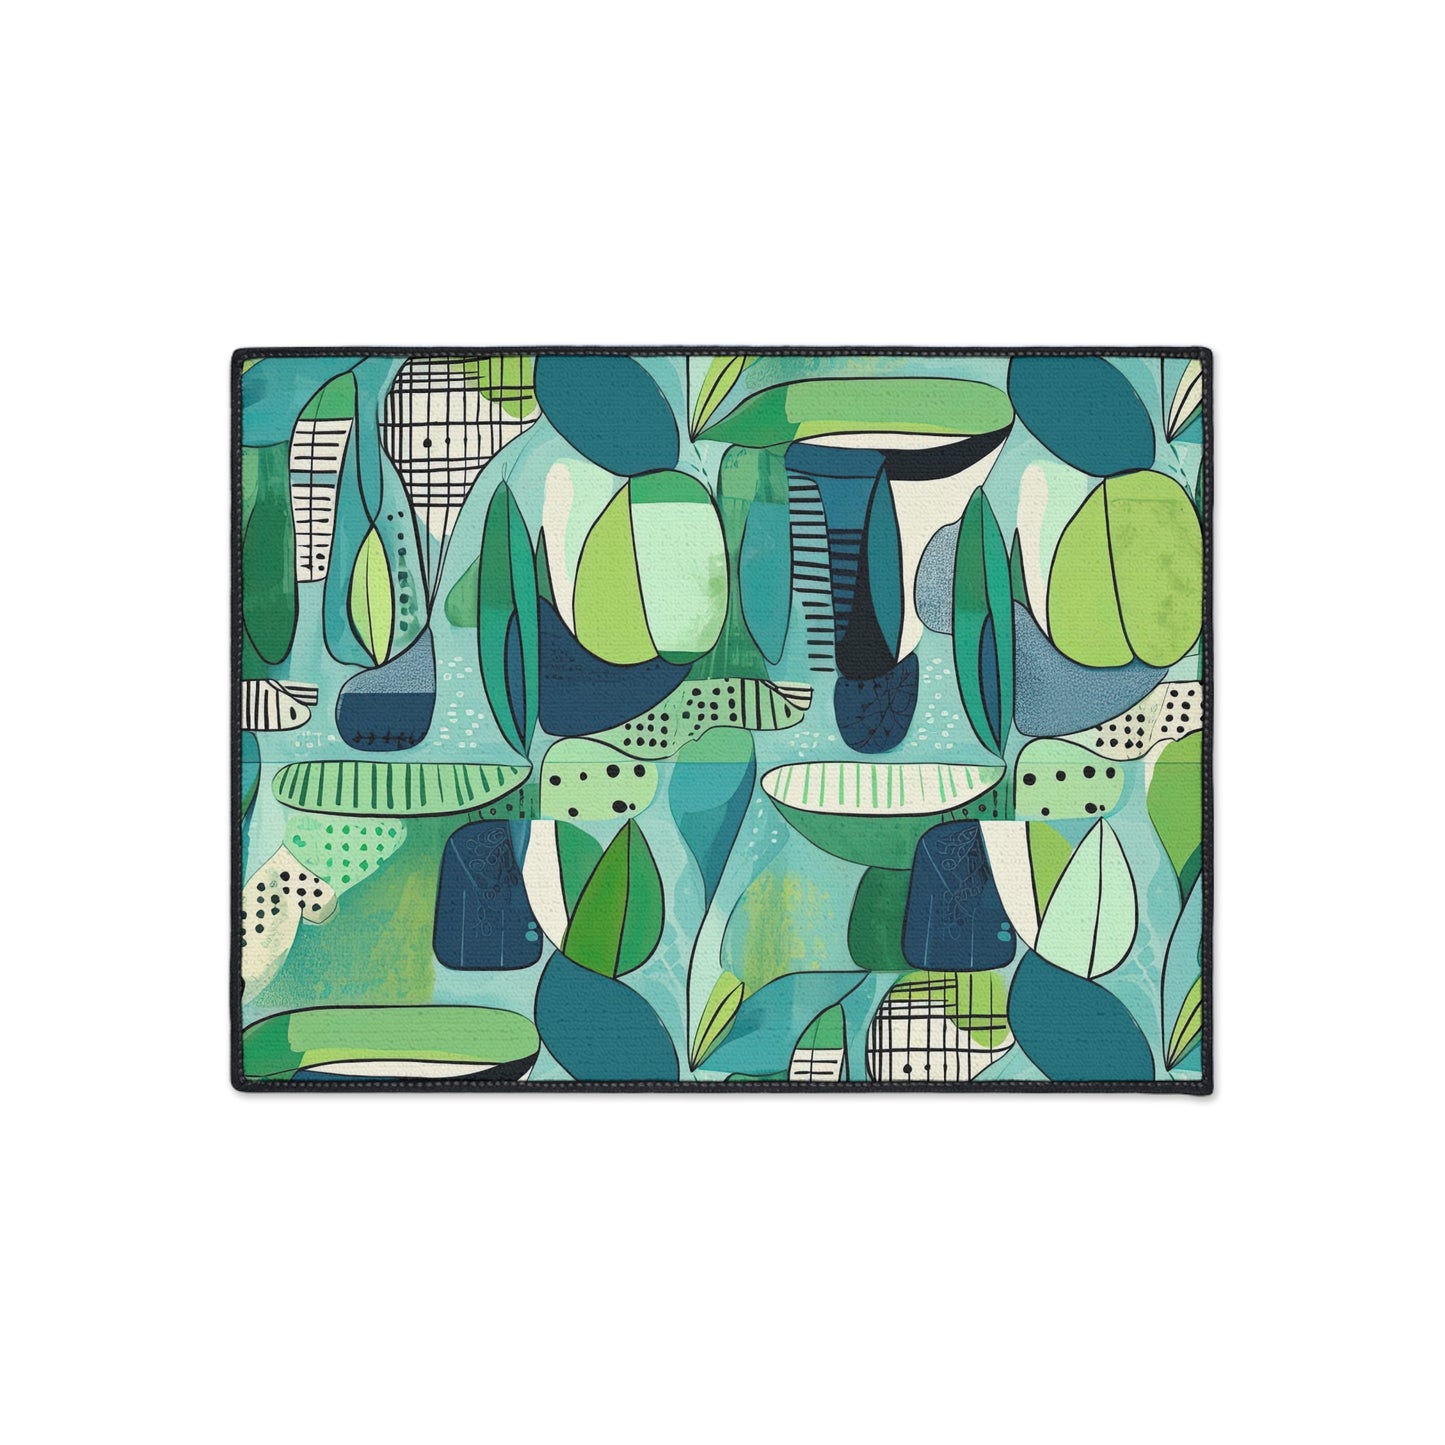 Cubist Midcentury Modern Garden Blue Green Graphic Welcome Indoor Outdoor Heavy Duty Floor Mat